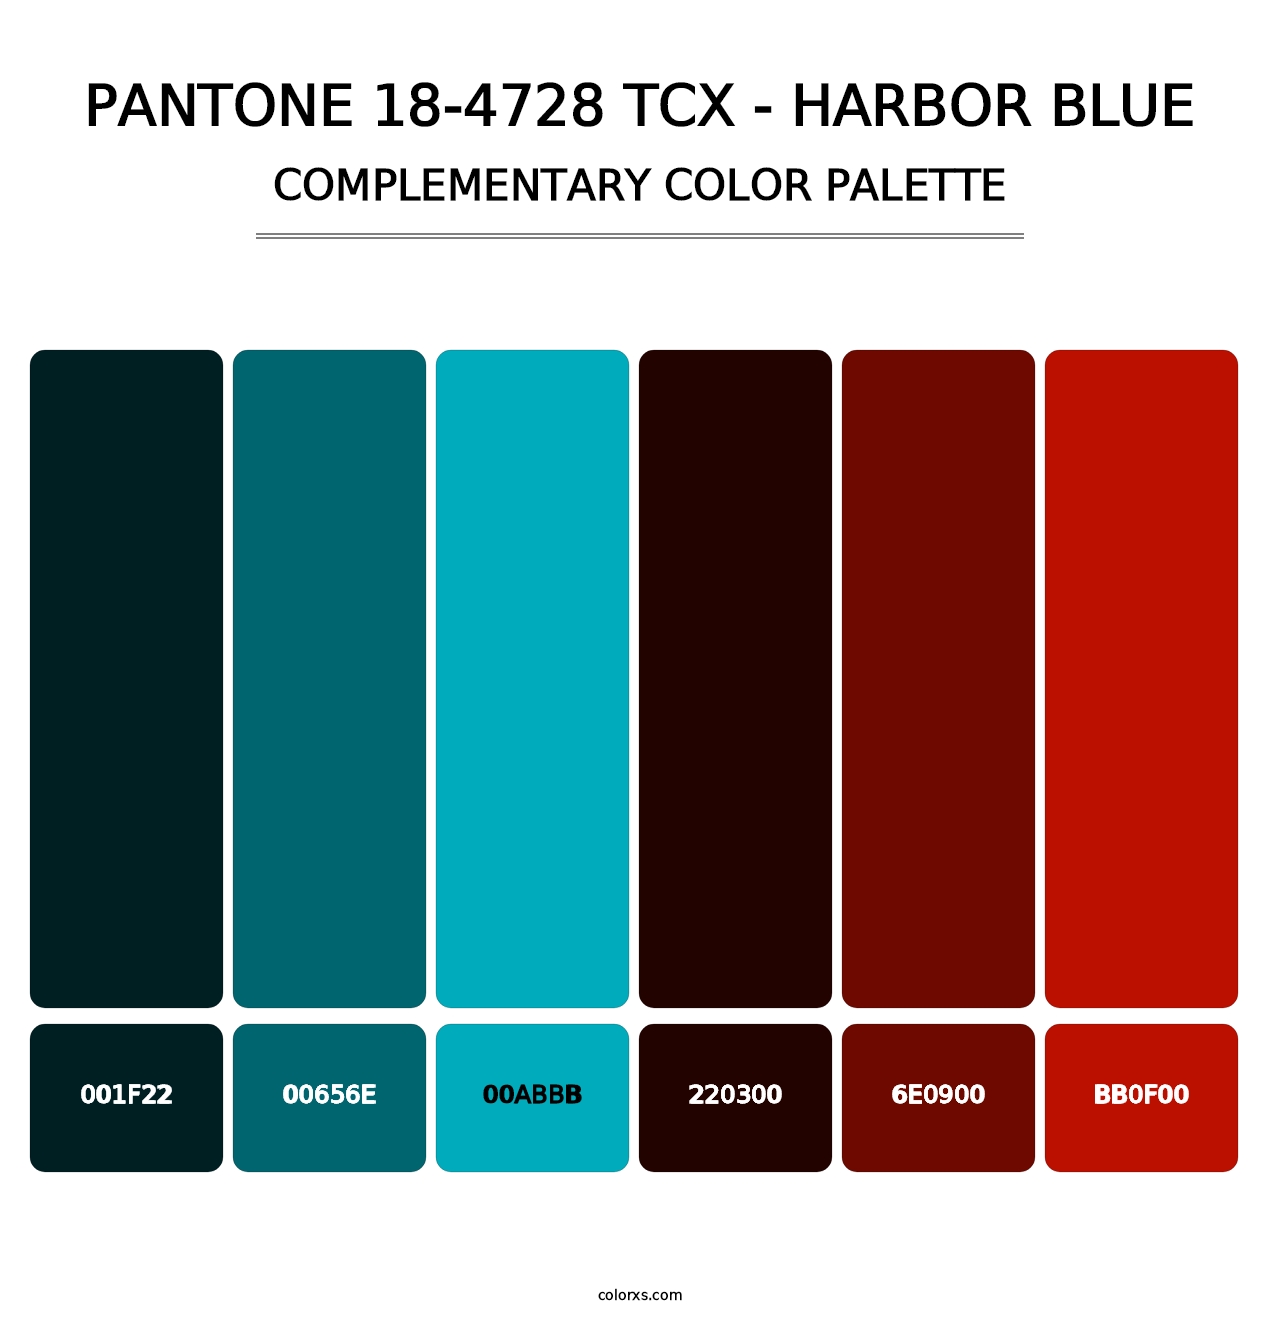 PANTONE 18-4728 TCX - Harbor Blue - Complementary Color Palette